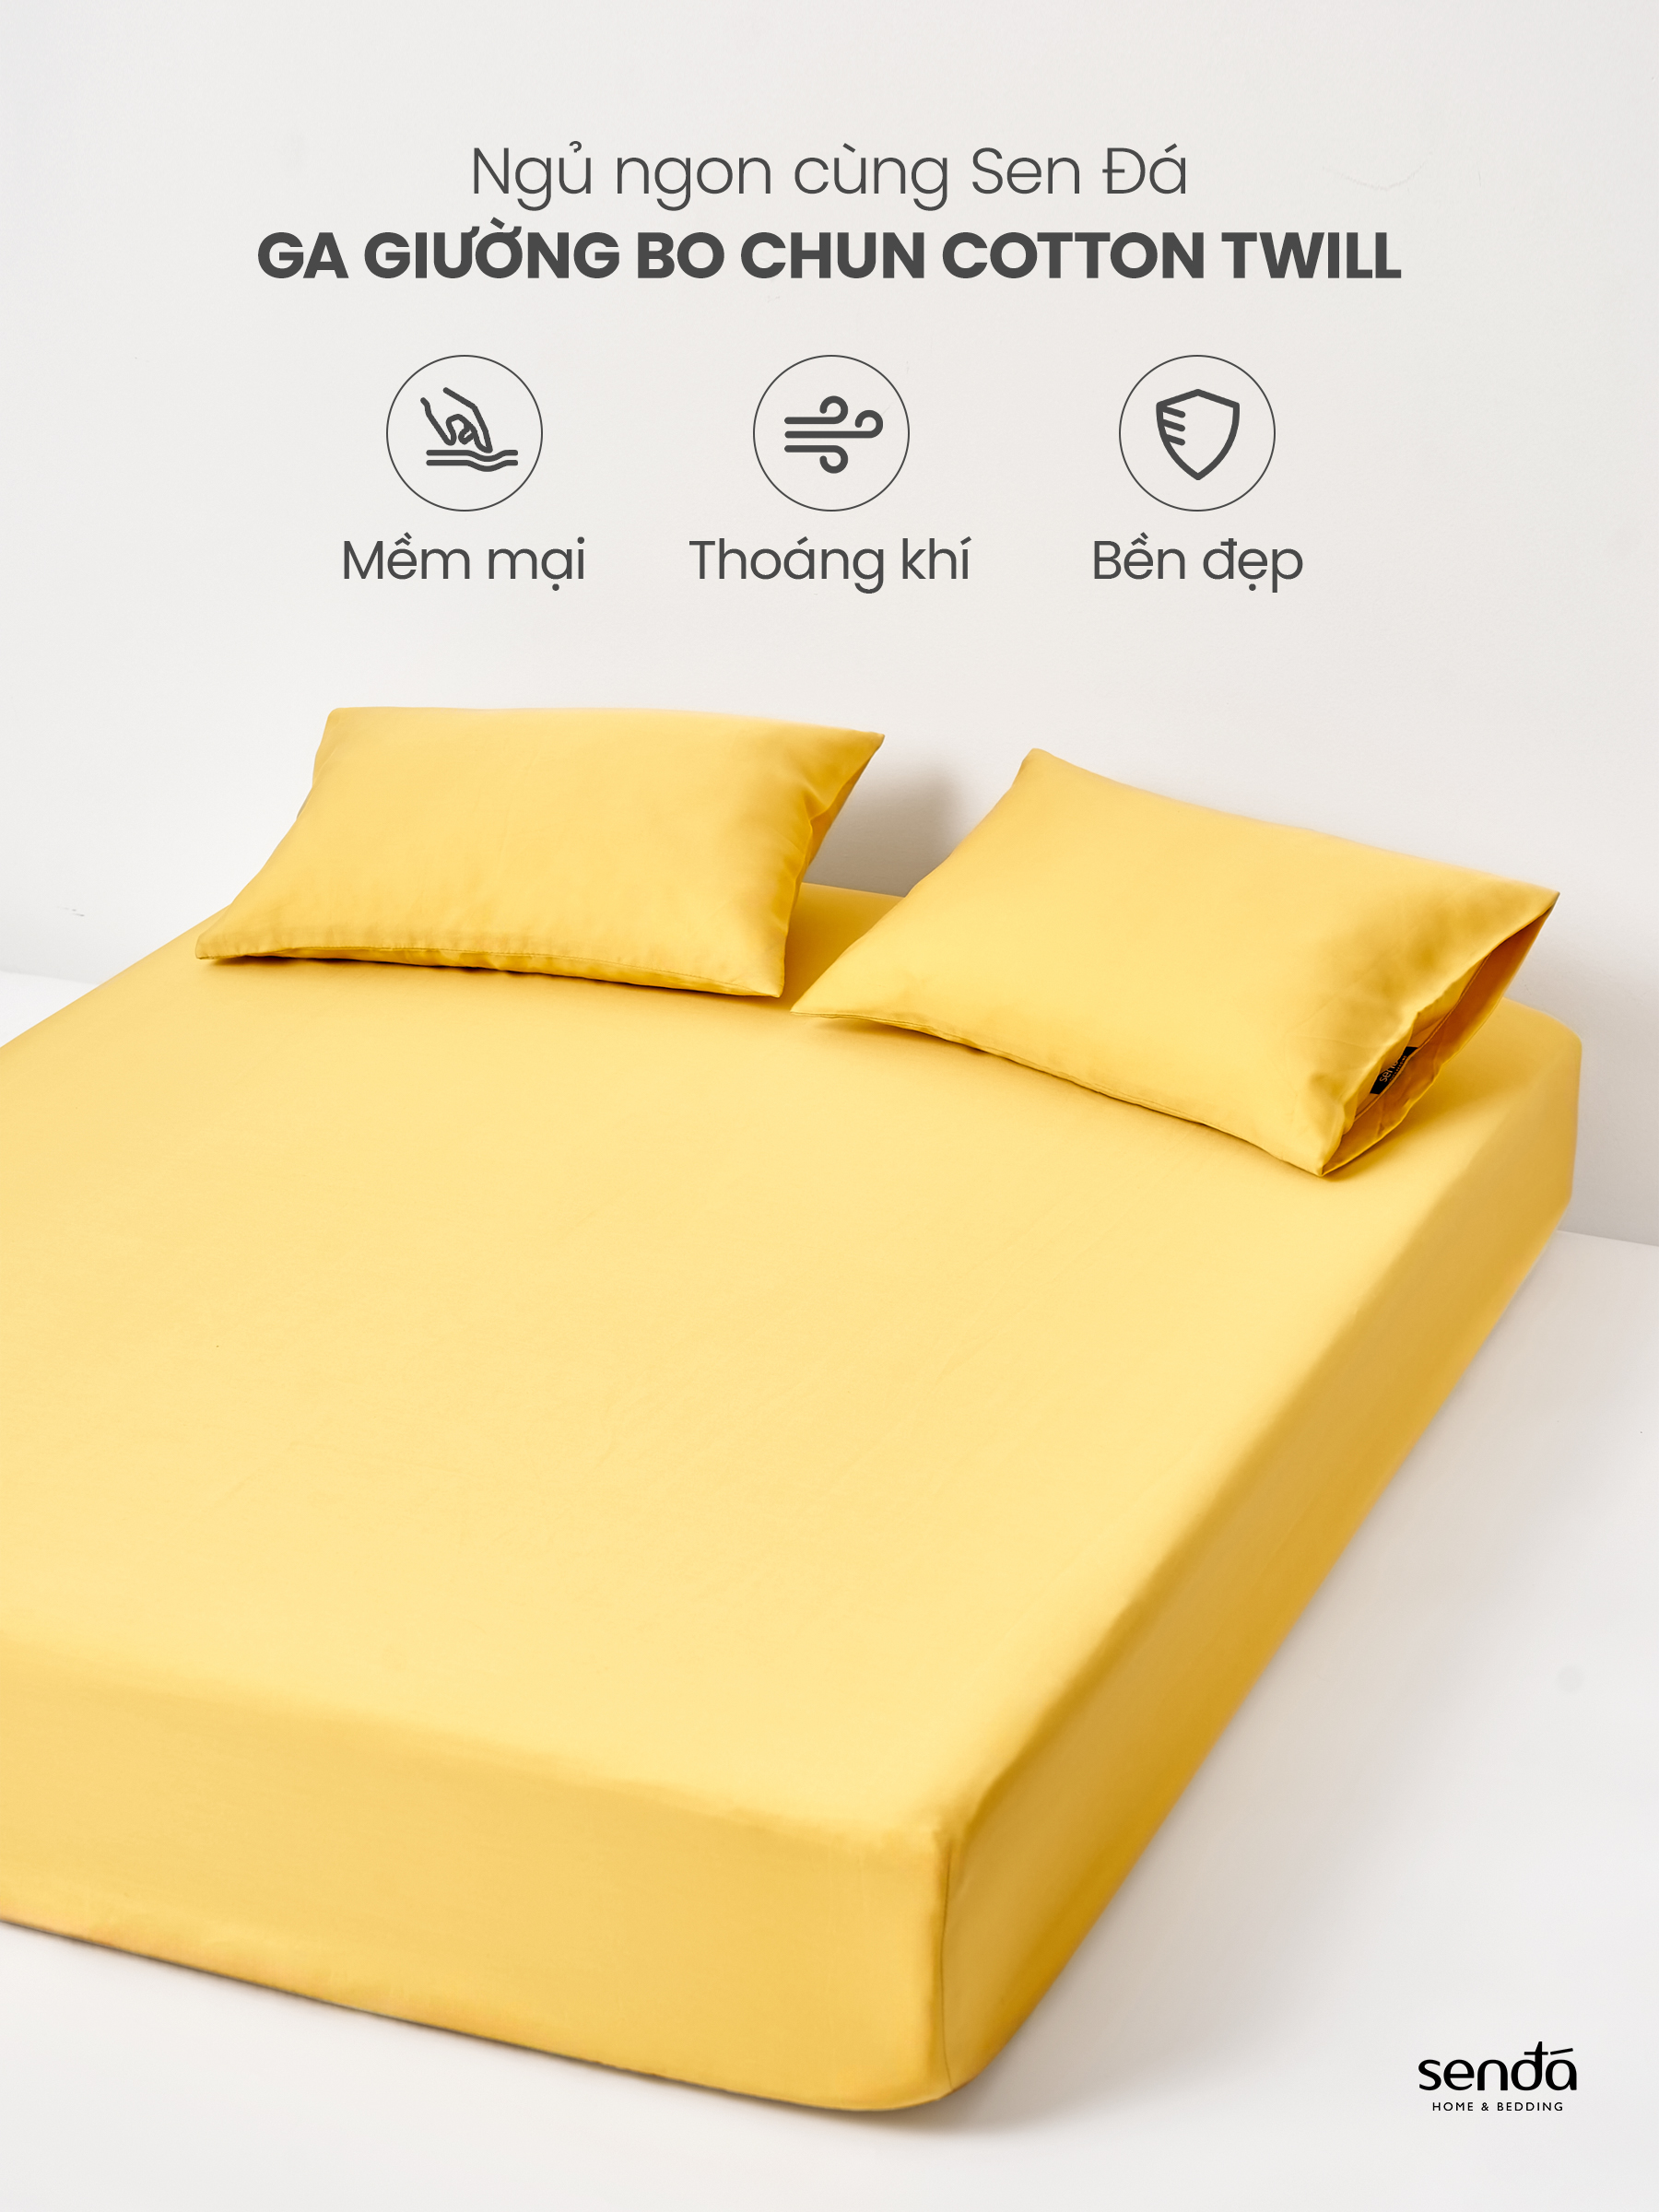 Ga giường 1m2 Cotton Twill Hàn Quốc Sen Đá Home Bedding cao cấp trơn màu, drap bo chun trải nệm, ra đệm 1m2x2m 1m2x1m9